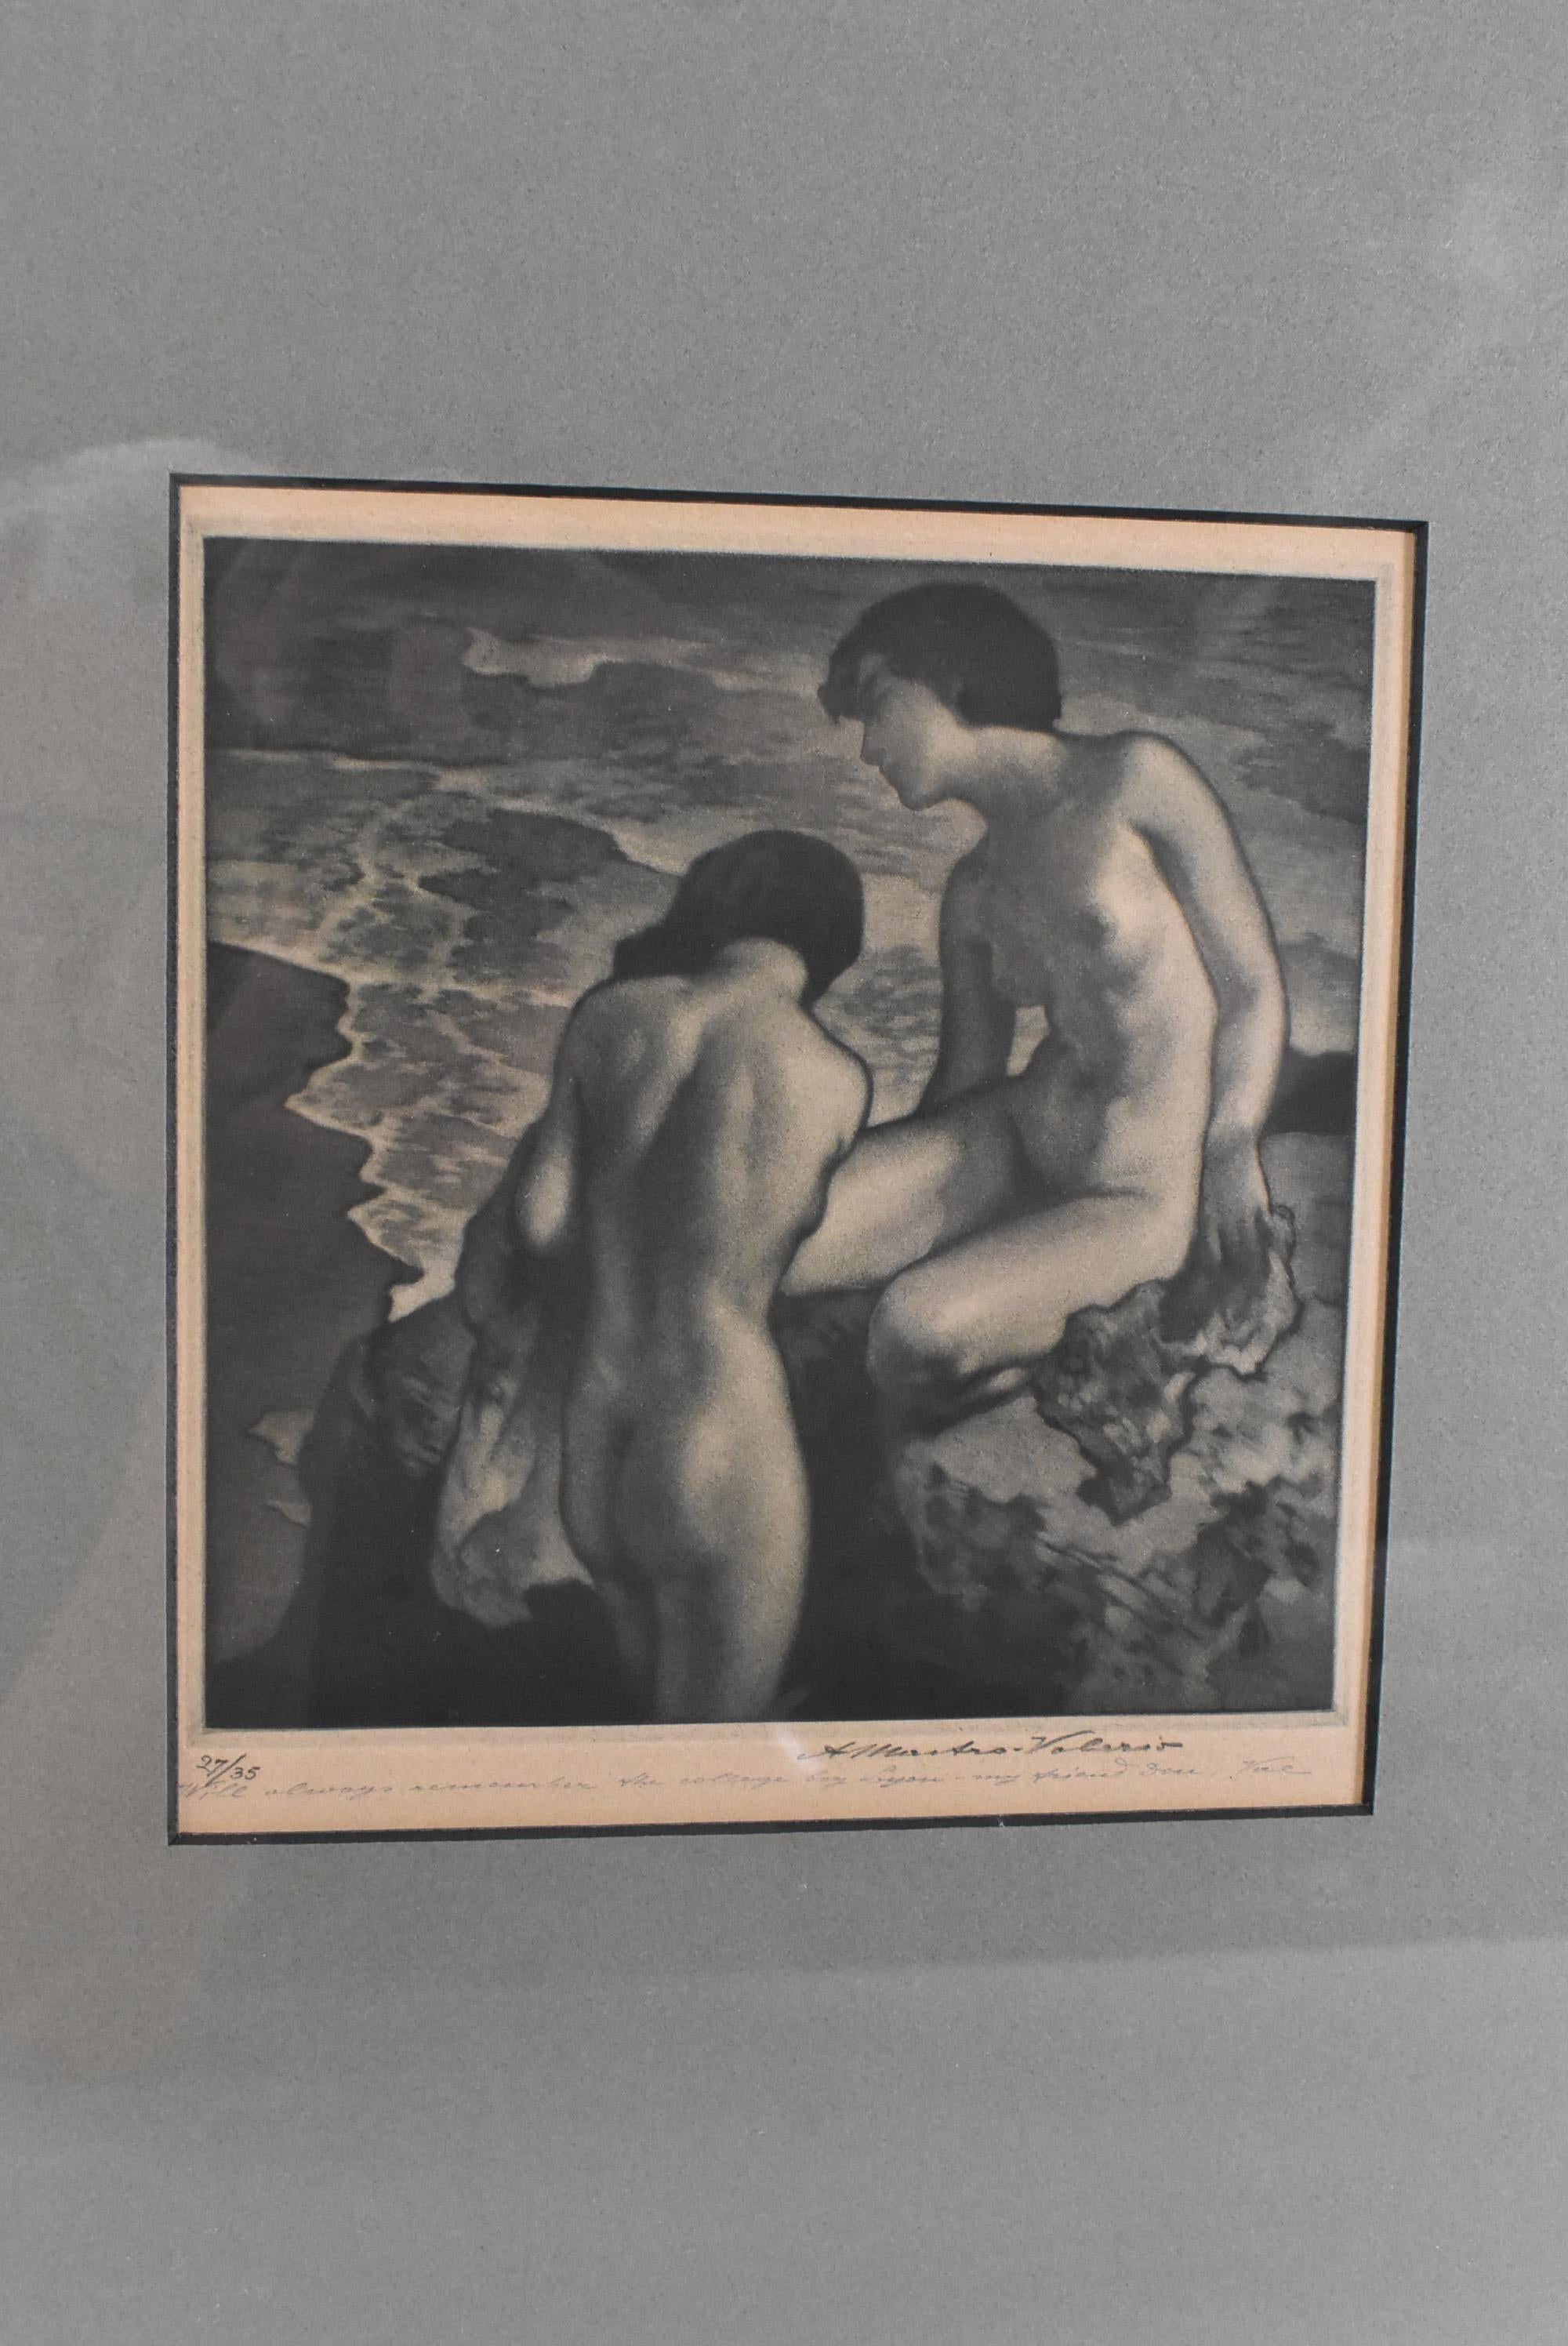 Mezzotinte de deux nus au bord de la mer se prélassant sur un rocher par Alessandro - Mastro Valerio 1887-1953. Signé en bas à droite. Numéro 27/35. Articulé au panneau arrière. Très bon état. Légère décoloration du papier due à l'âge. Le cadre